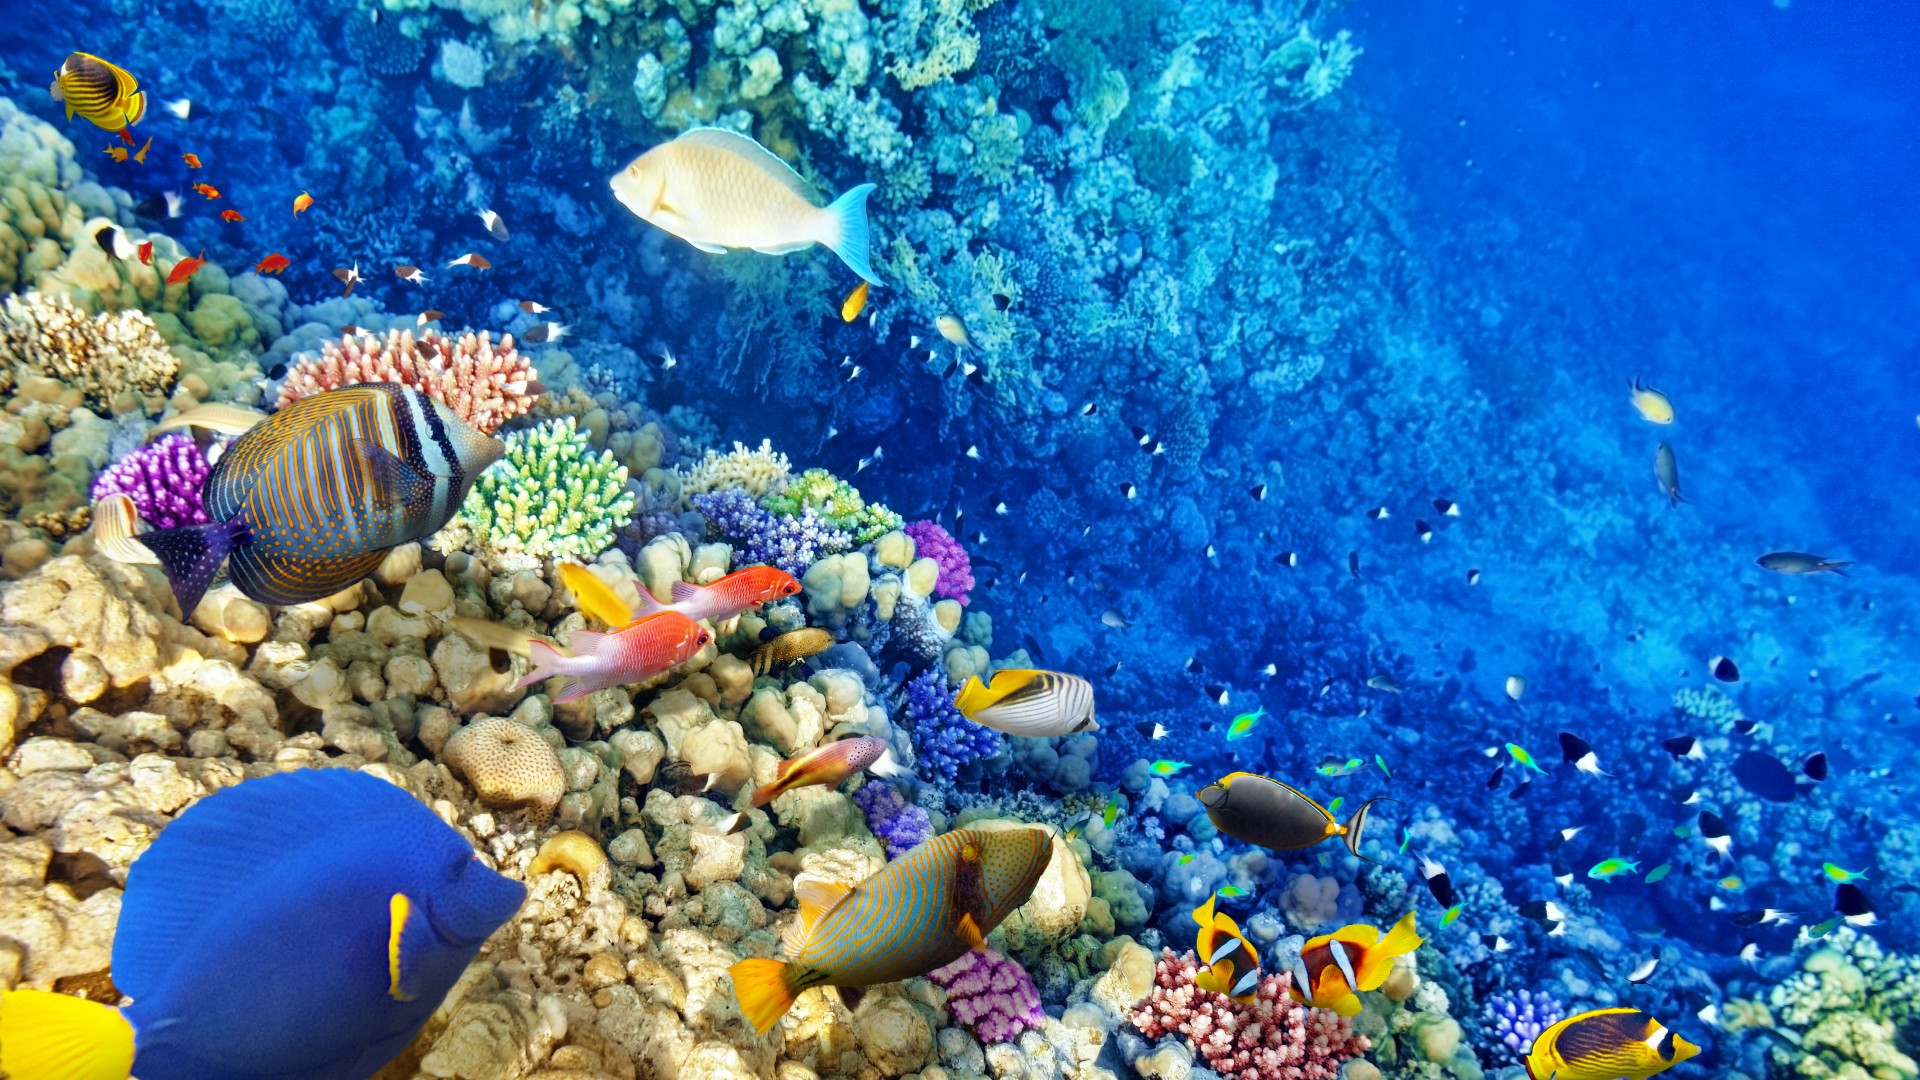 水下世界 珊瑚 珊瑚礁 热带鱼 海洋 桌面壁纸 动物壁纸 壁纸下载 彼岸桌面